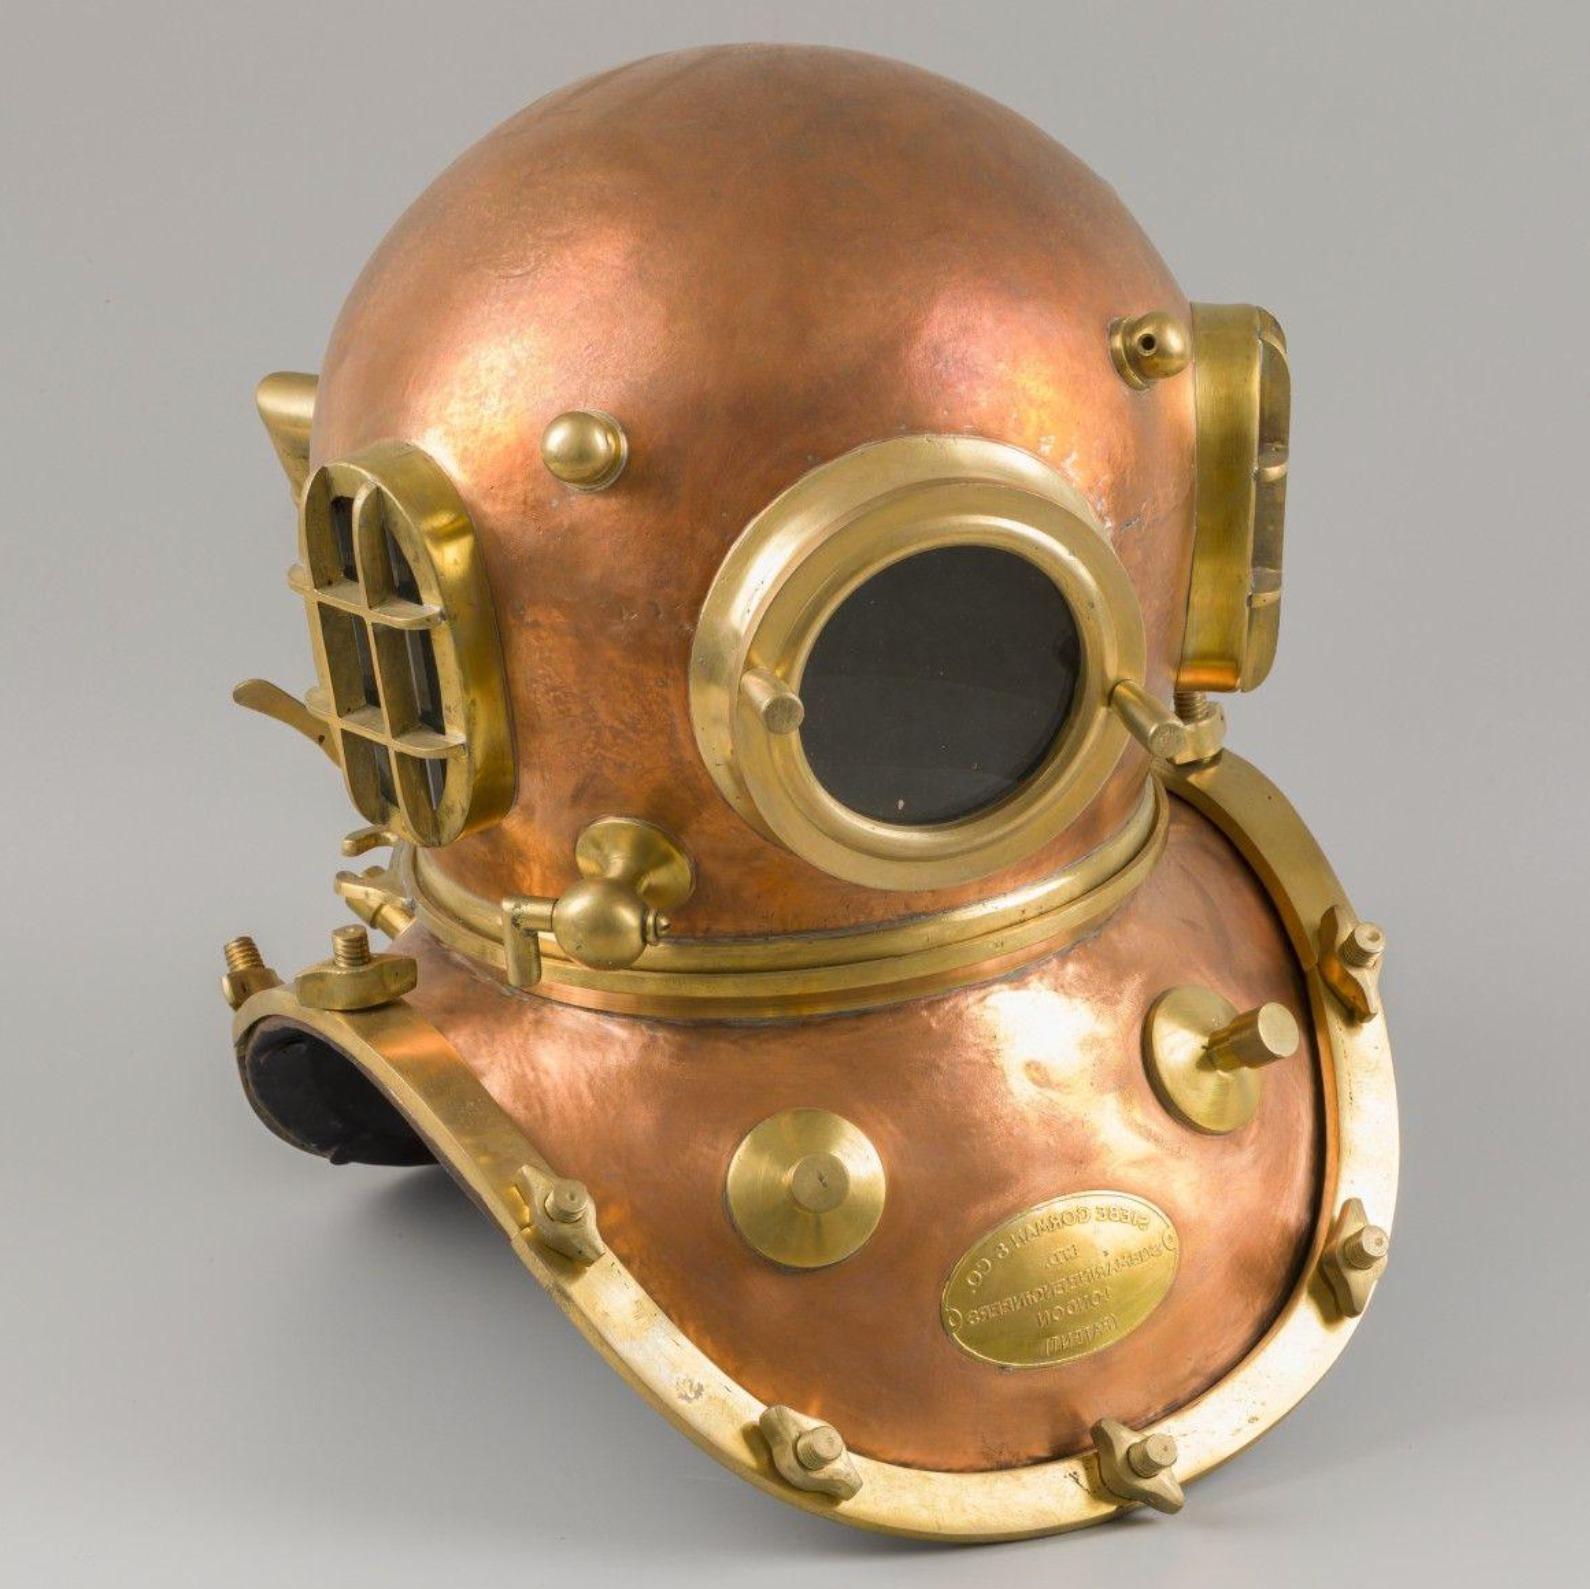 English Replica Brass 12-Bolt Siebe Gorman & Co. Diving Helmet